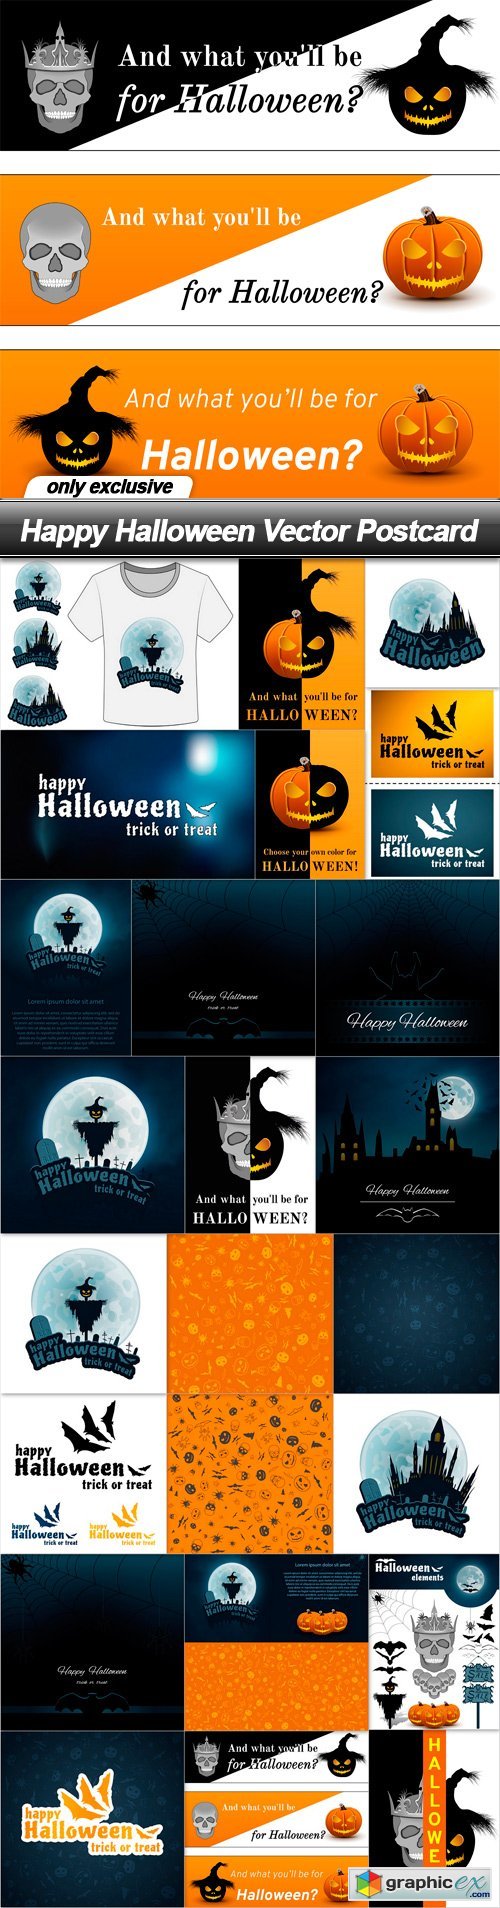 Happy Halloween Vector Postcard - 24 EPS